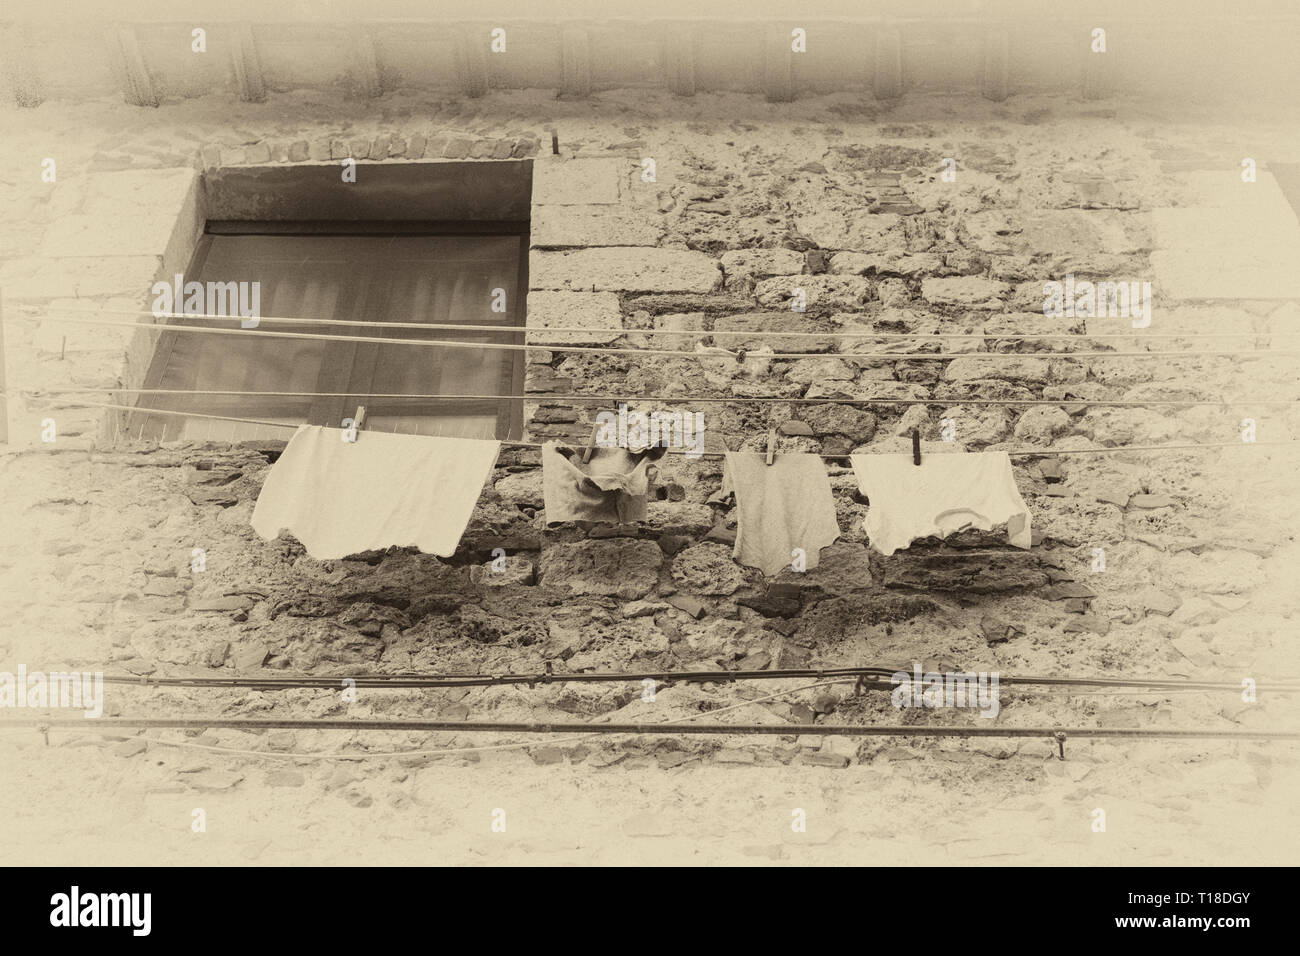 Servicio de lavandería a secar en Siena, Toscana, Italia. Foto de stock